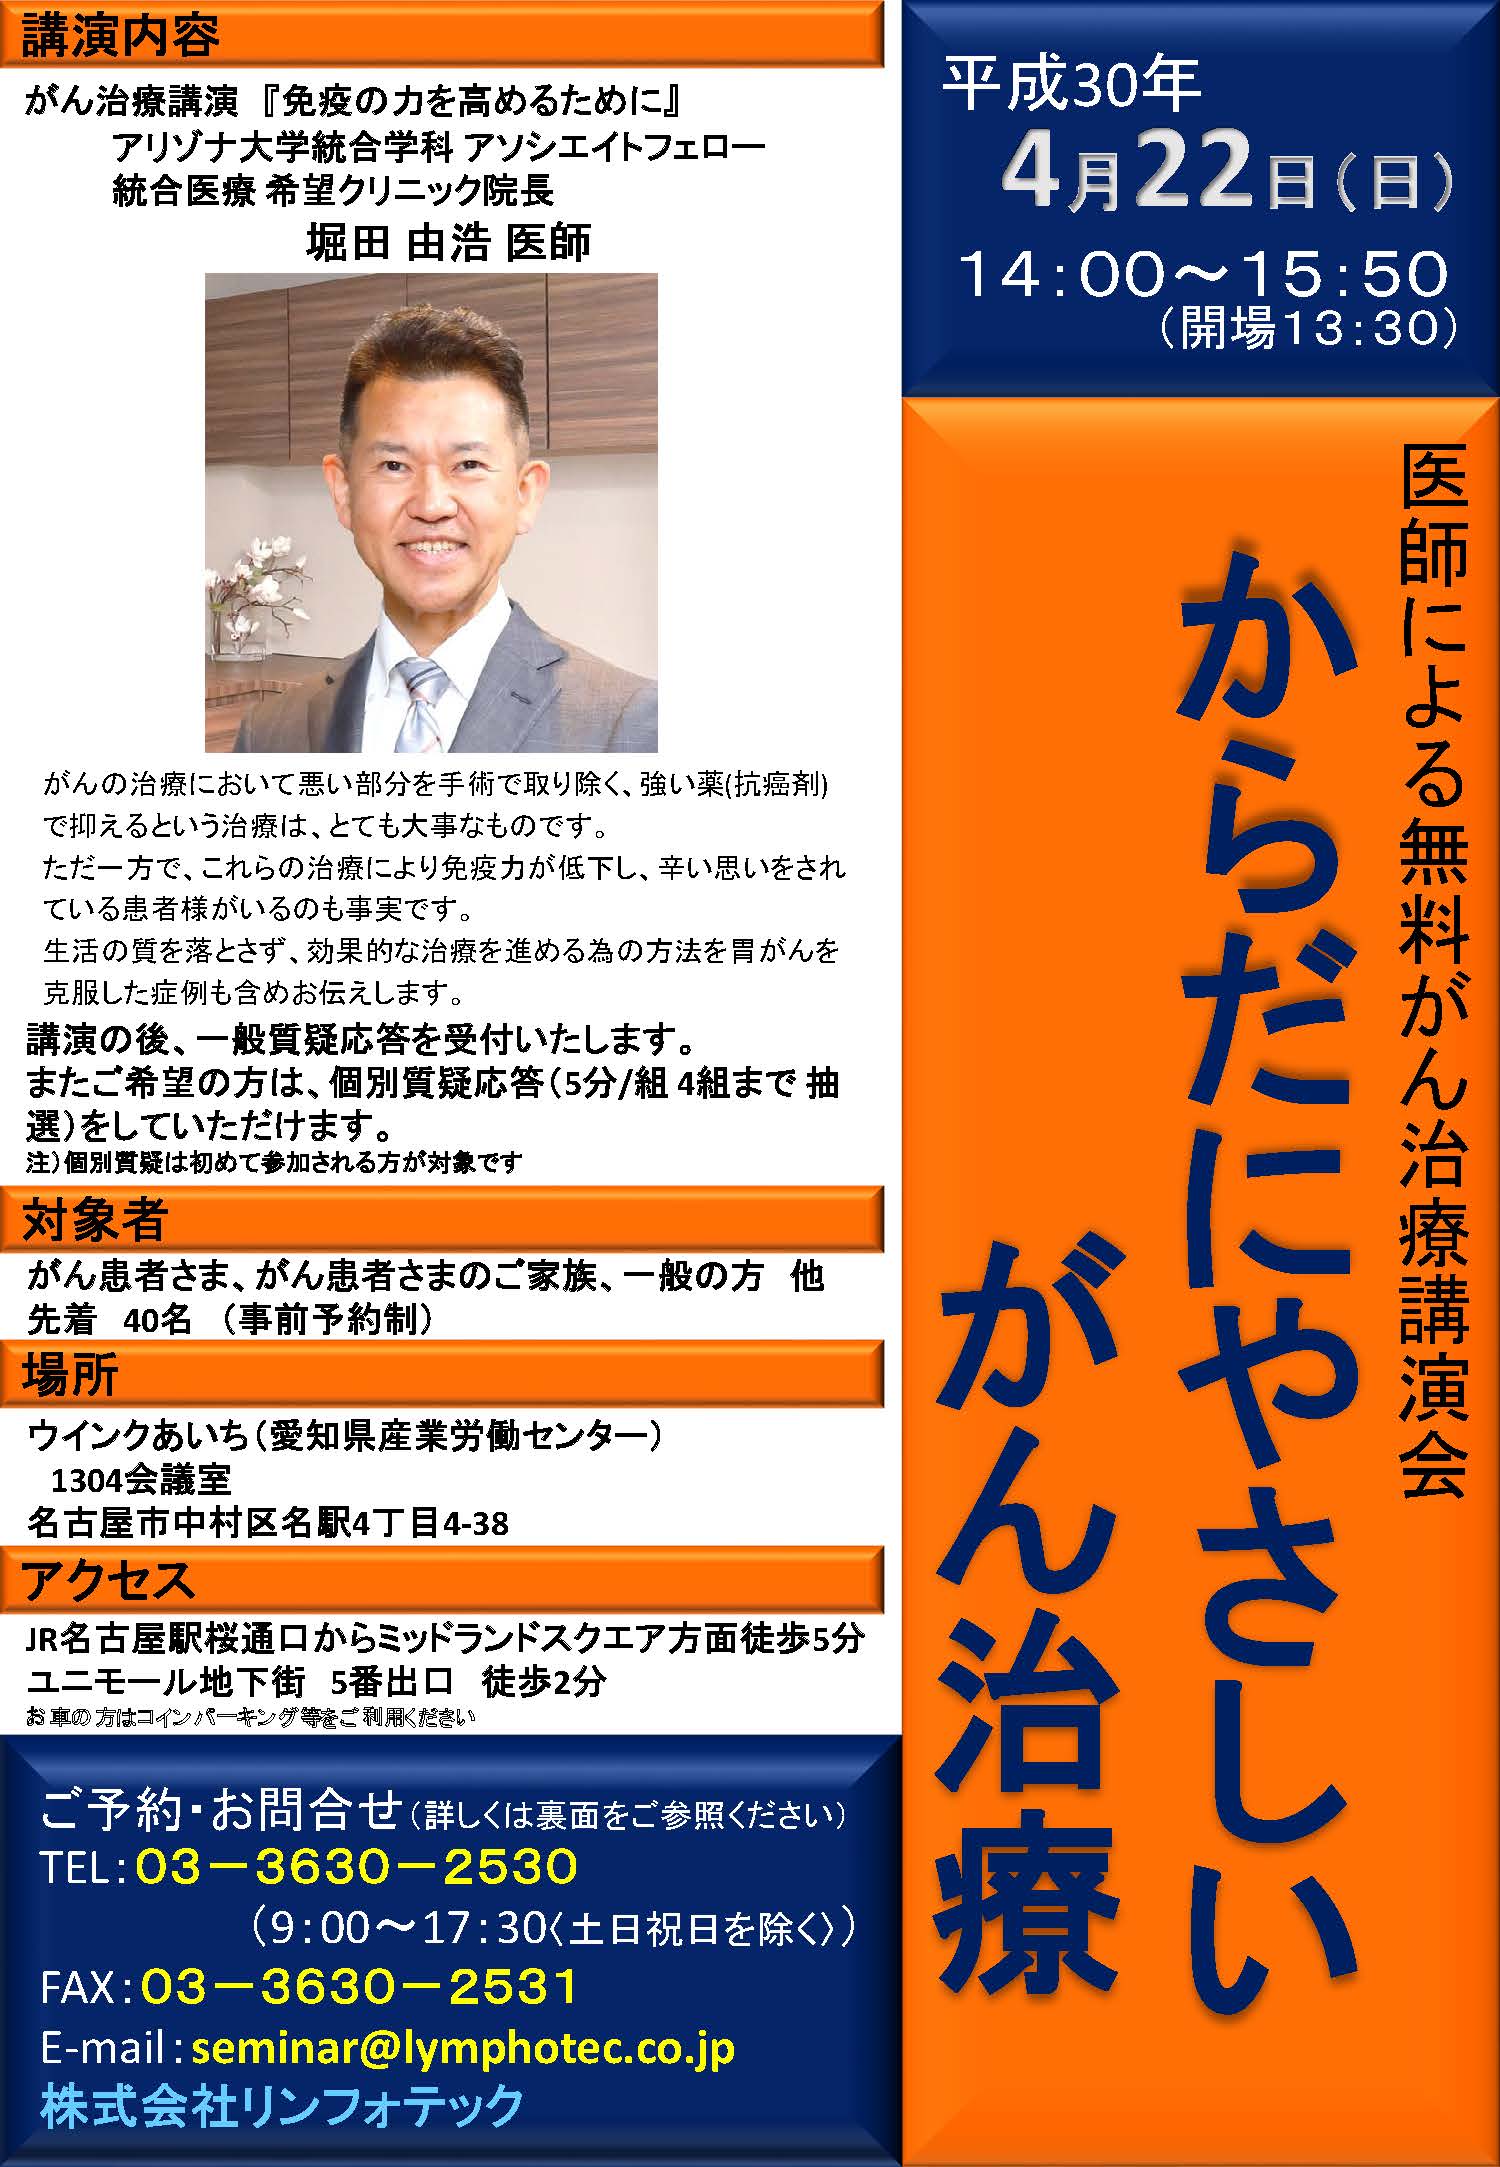 名古屋にてがん治療講演会を開催